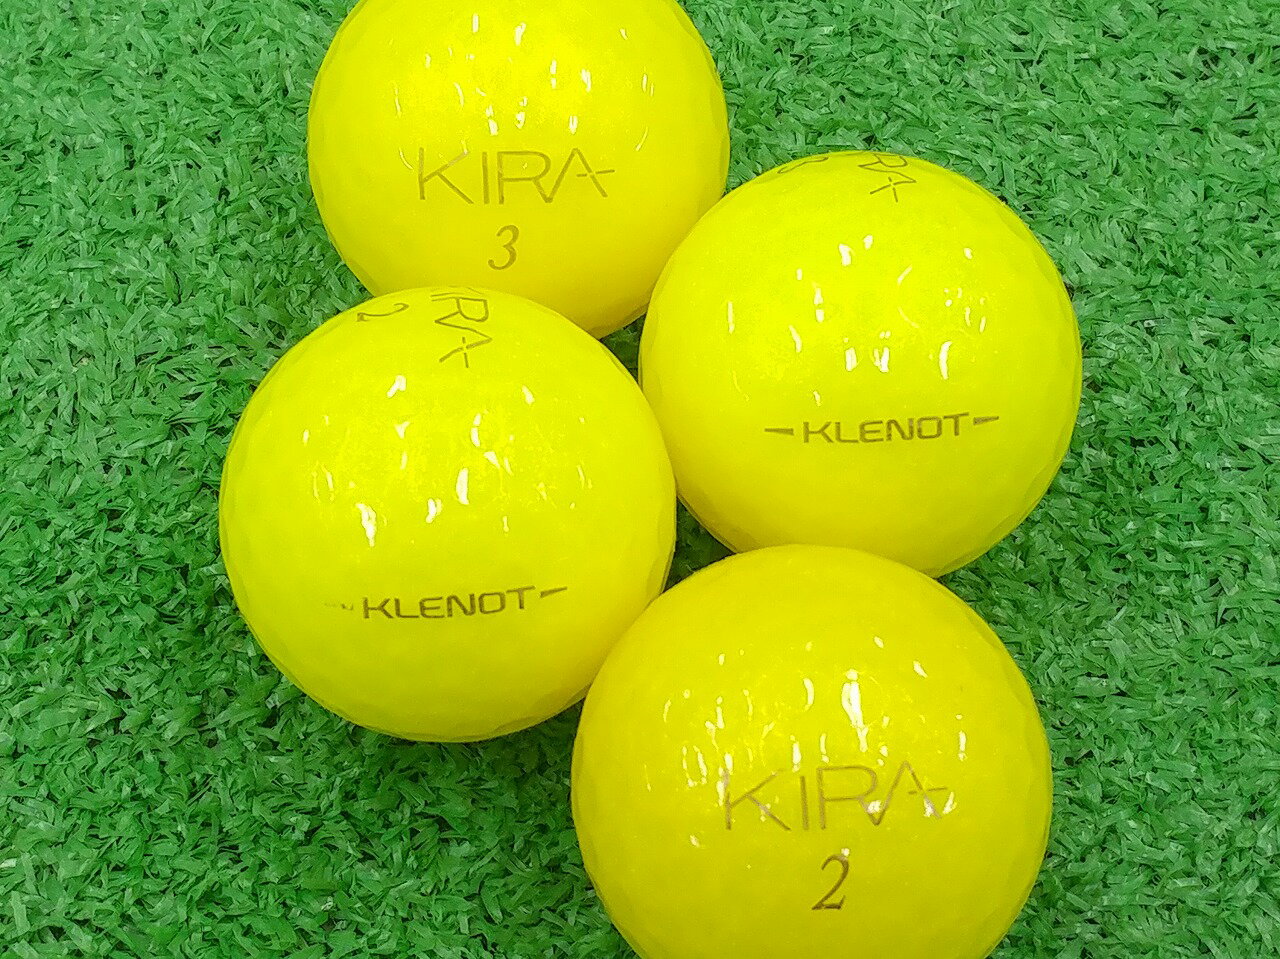 【中古】【ABランク】【ロゴあり】キャスコ KIRA KLENOT 2014年モデル イエローダイヤモンド 1個 ロストボール ゴルフボール